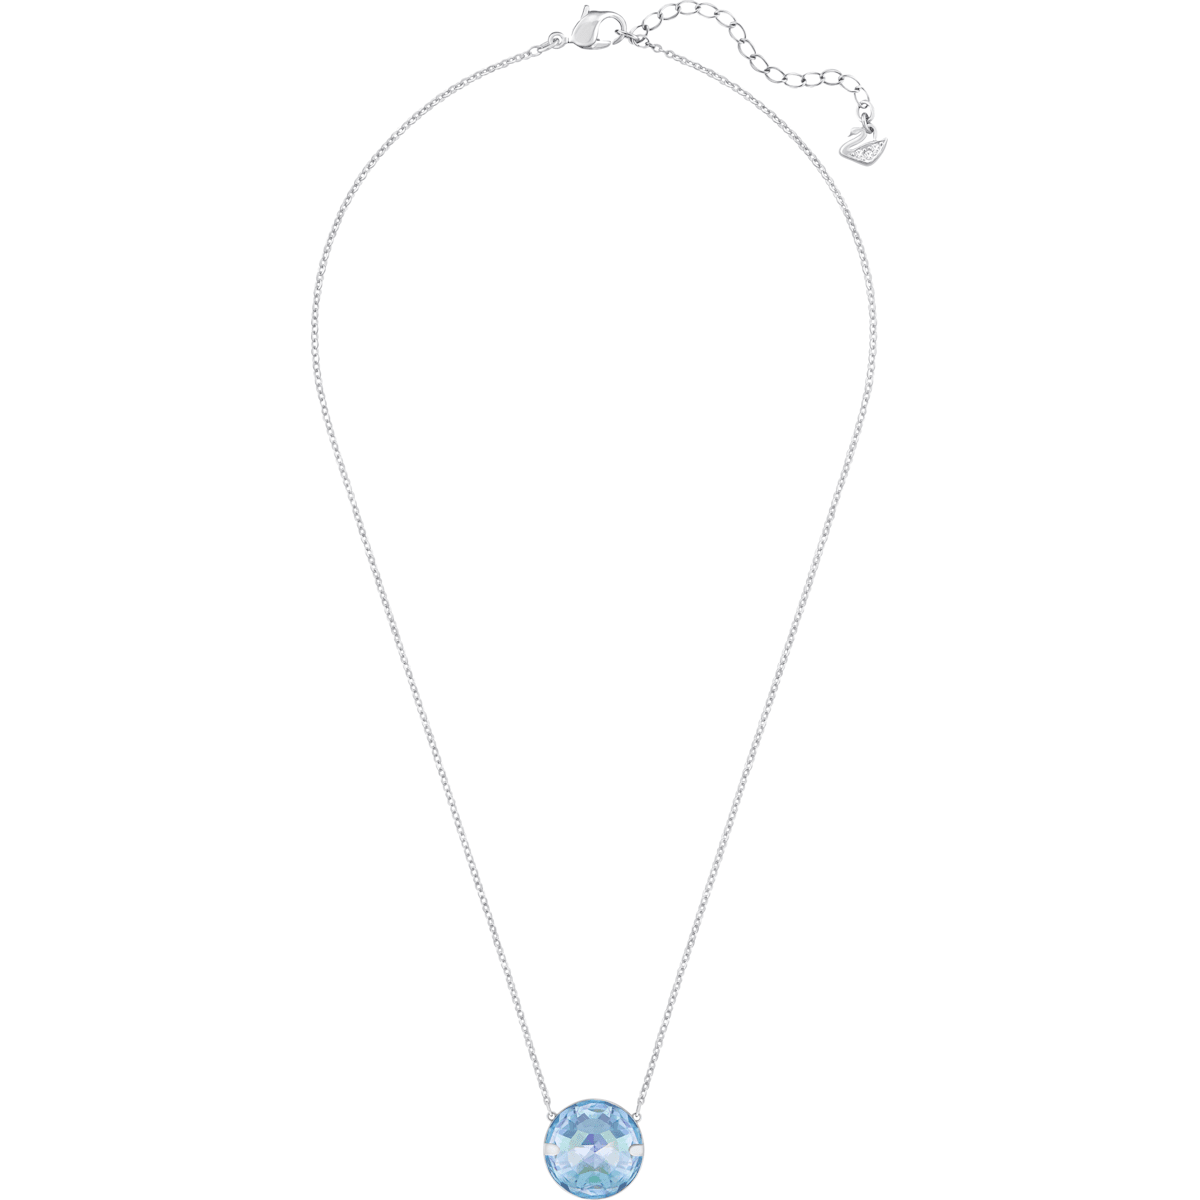 Swarovski - Globe Halskette, Blau, Rhodiniert - CRYSTAL UNTERBERGER